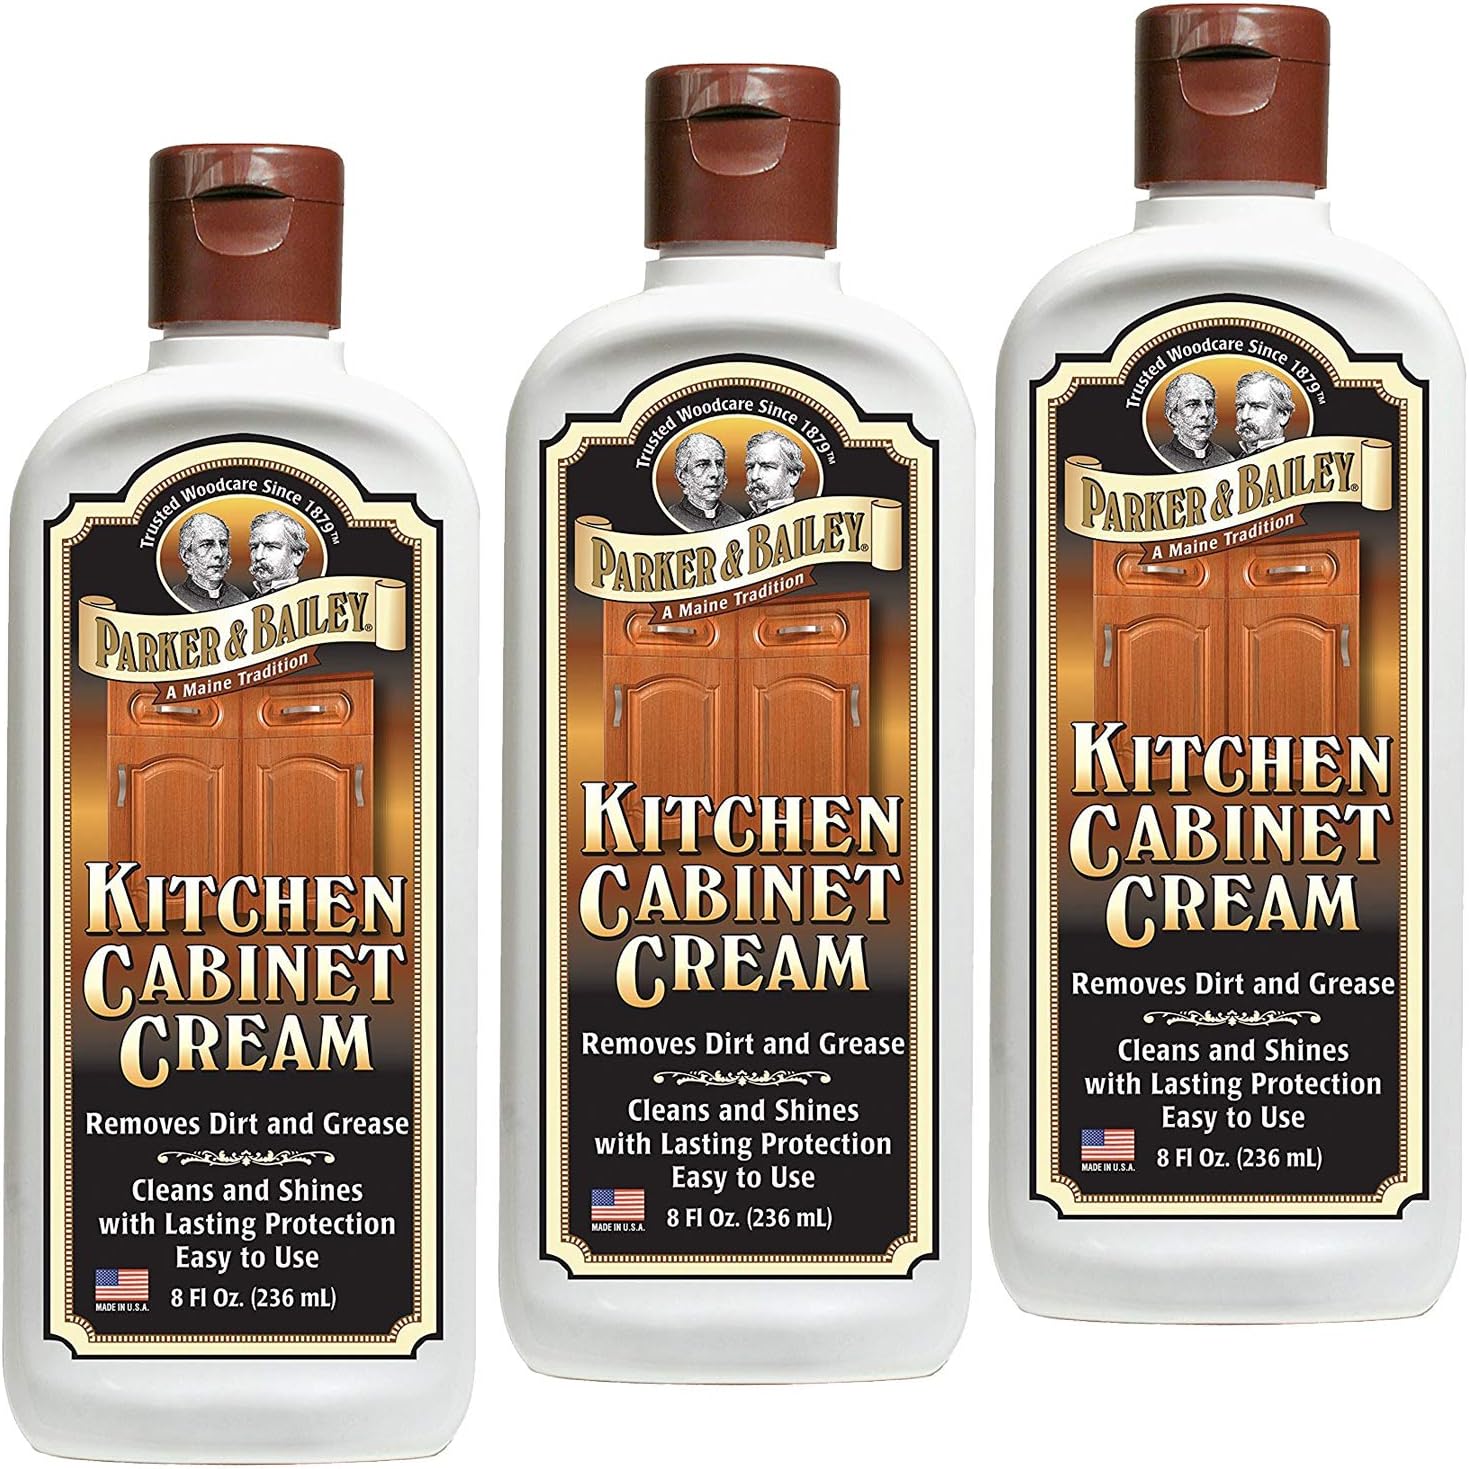 Parker & Bailey Kitchen Cabinet Cream 8oz (3) : Health & Household